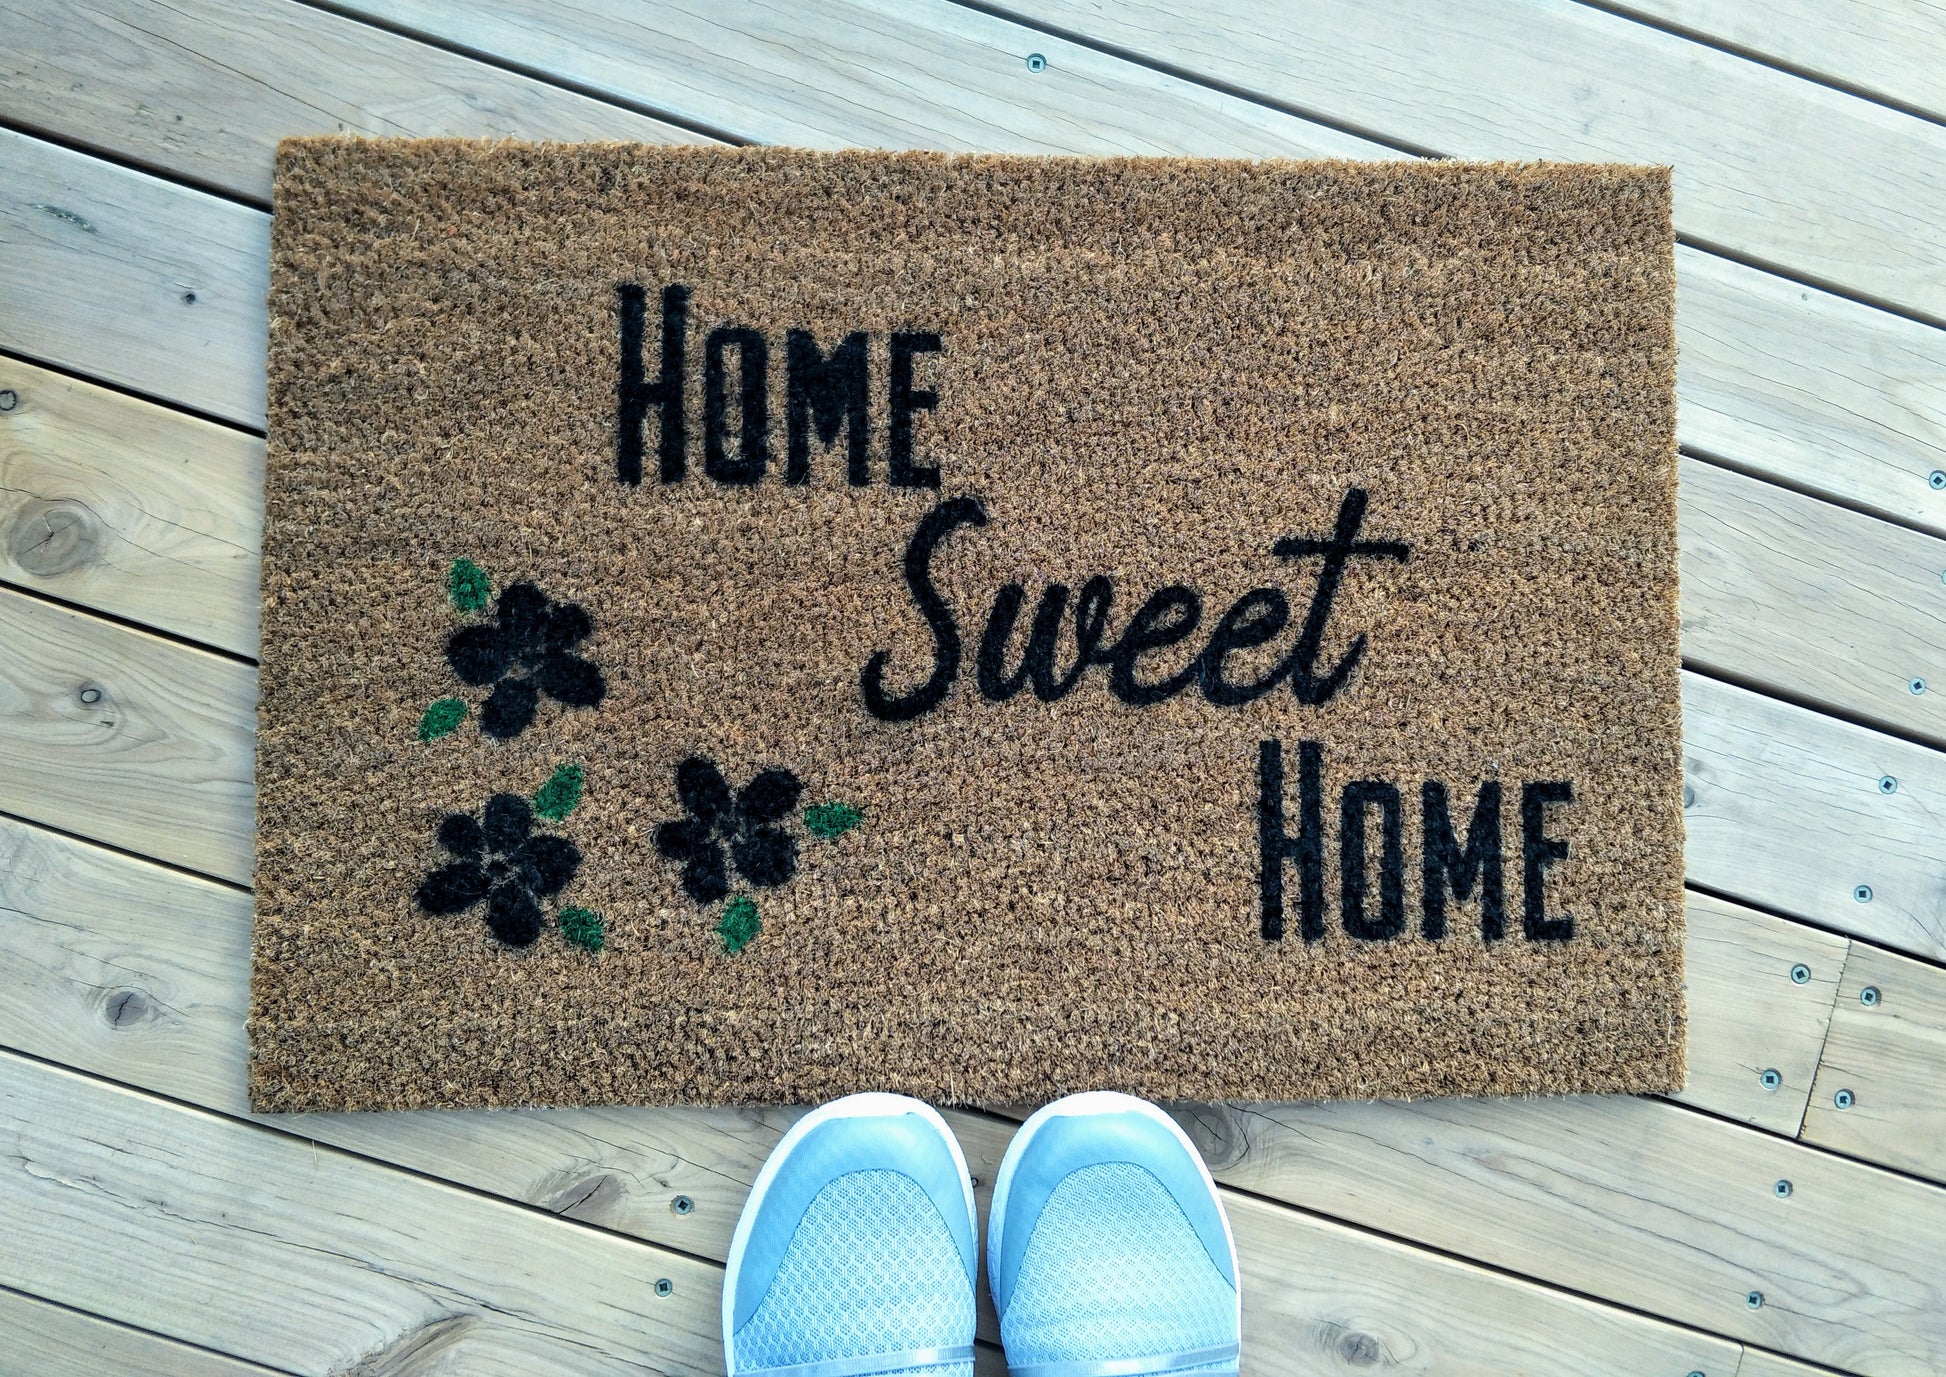 Home Sweet Home doormat with Petals - Personalised Doormat Australia